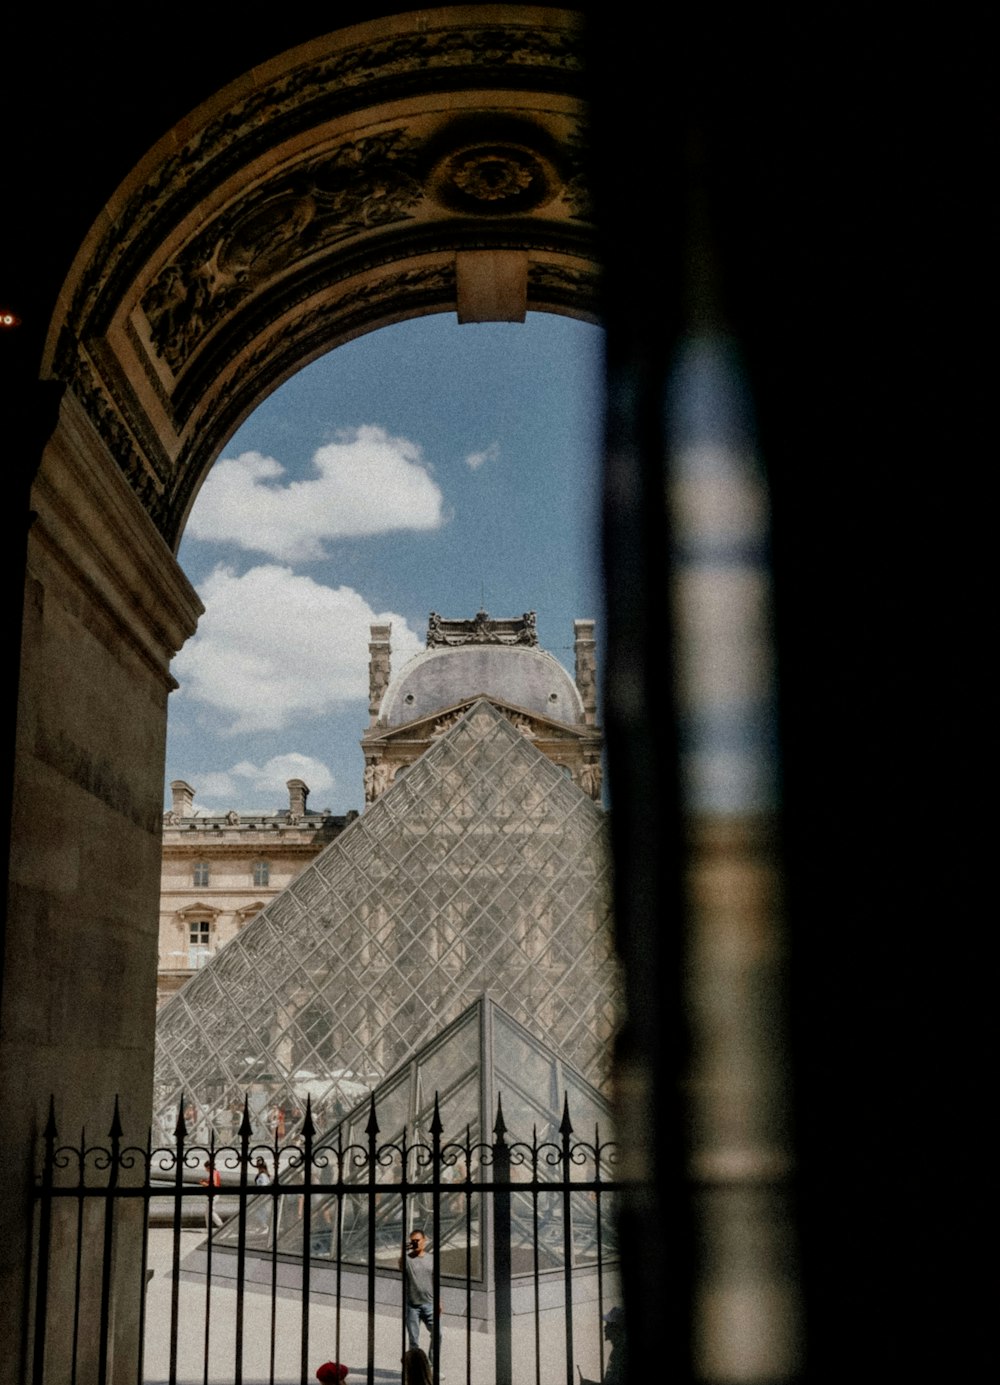 a view of a pyramid through a gate